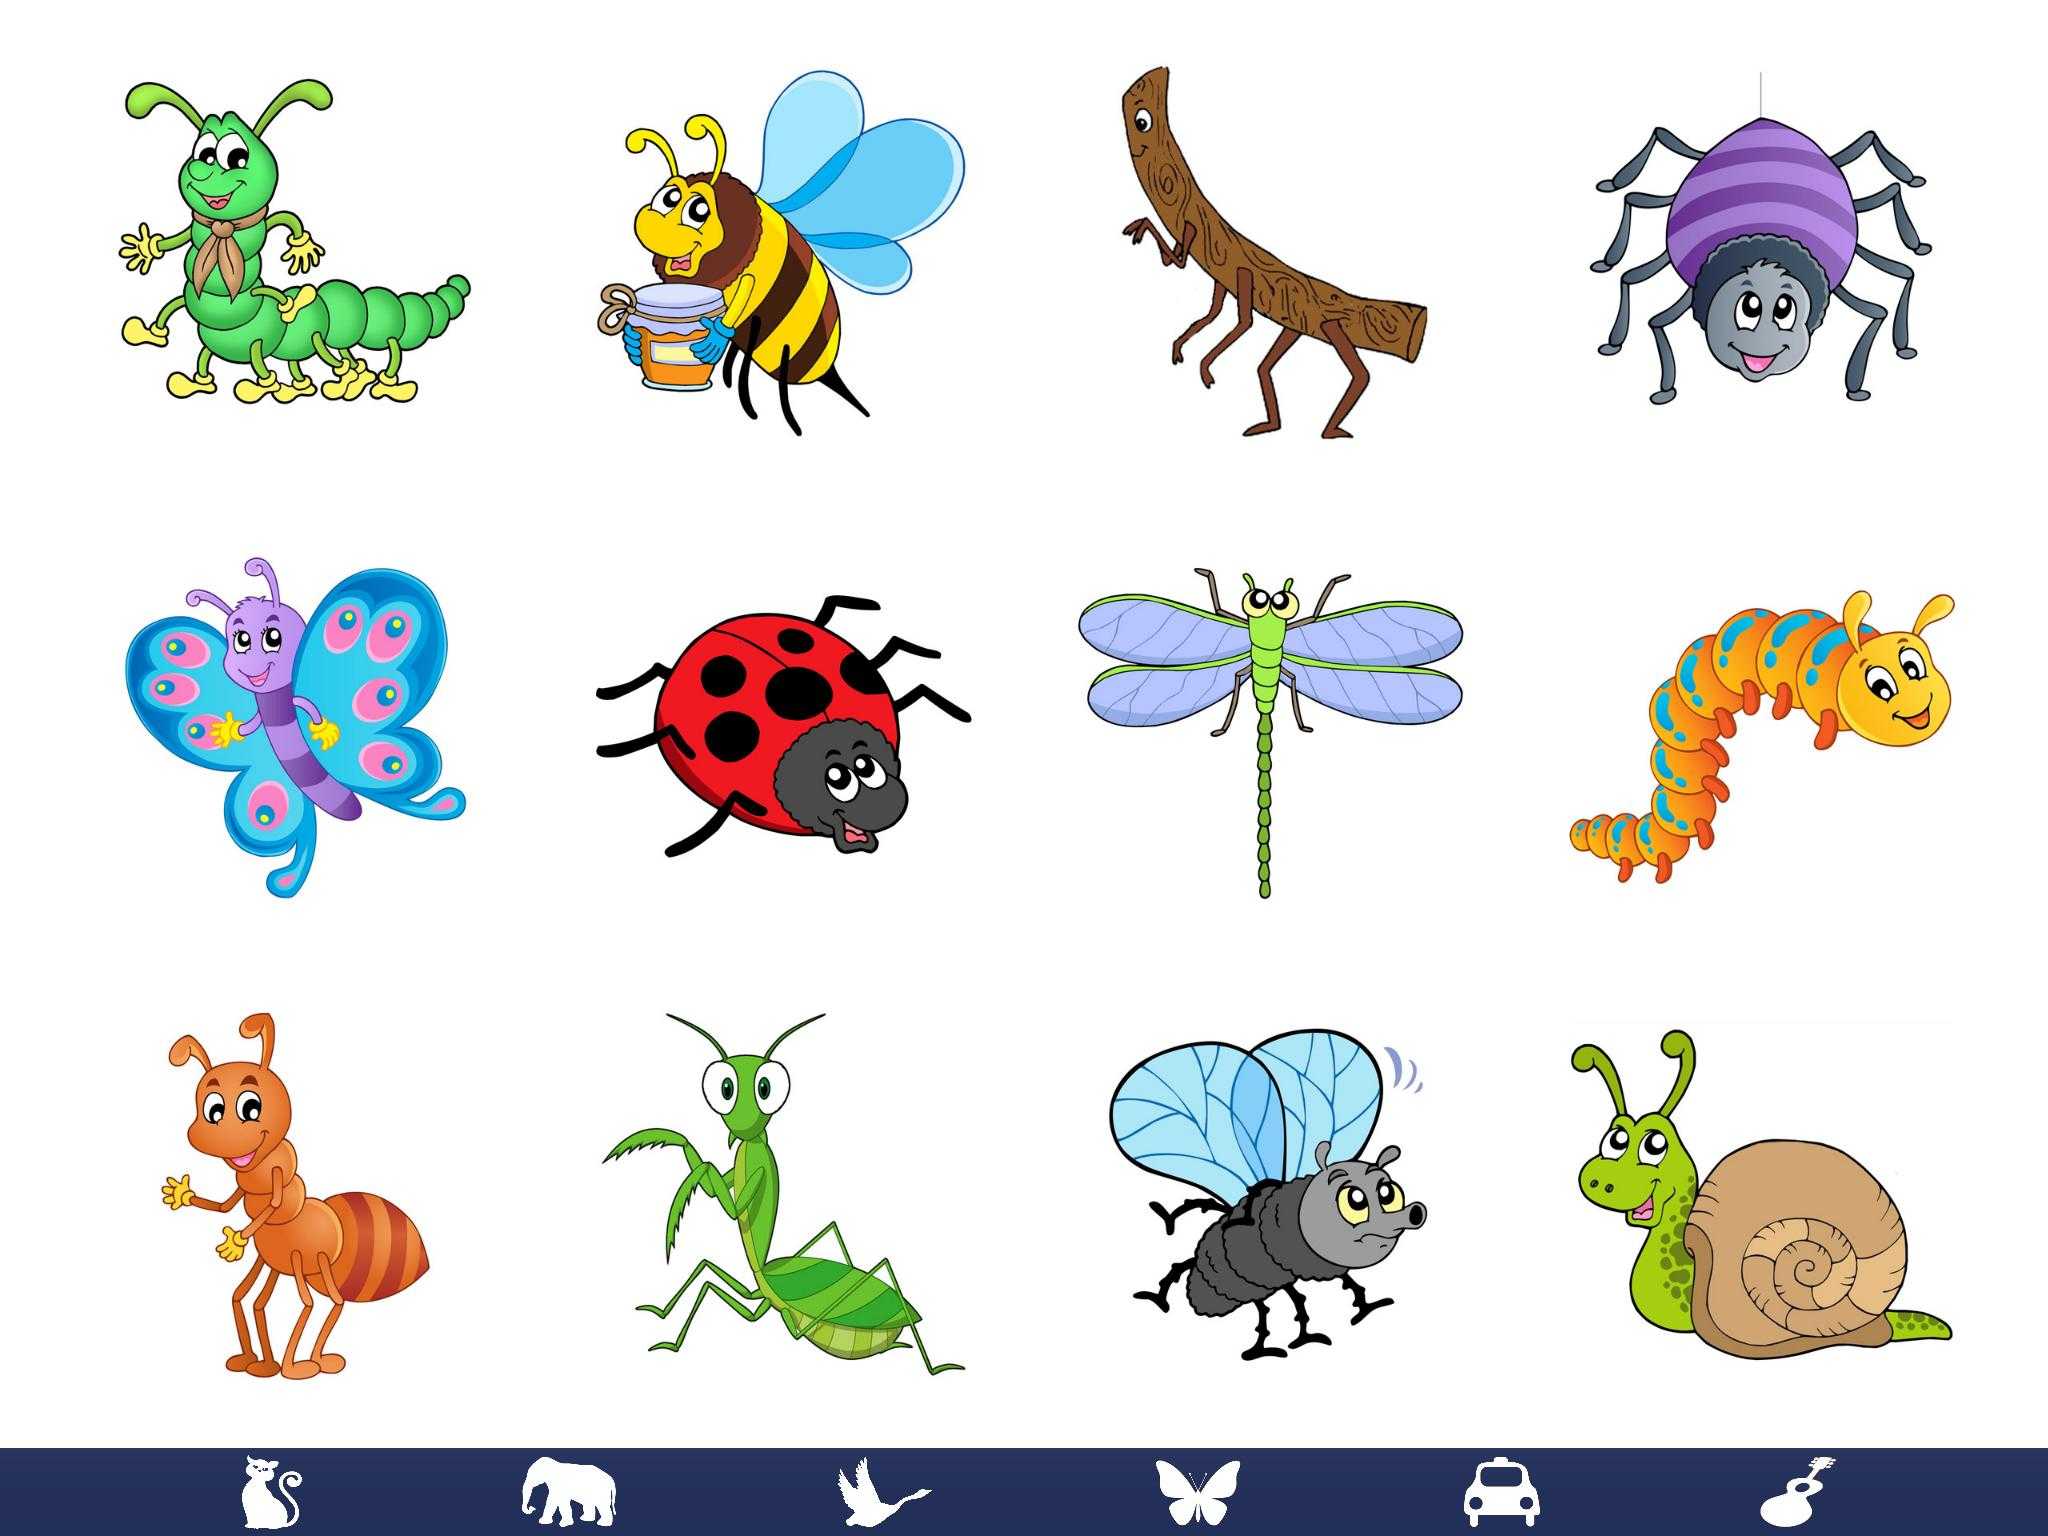 Про насекомых детям 5 лет